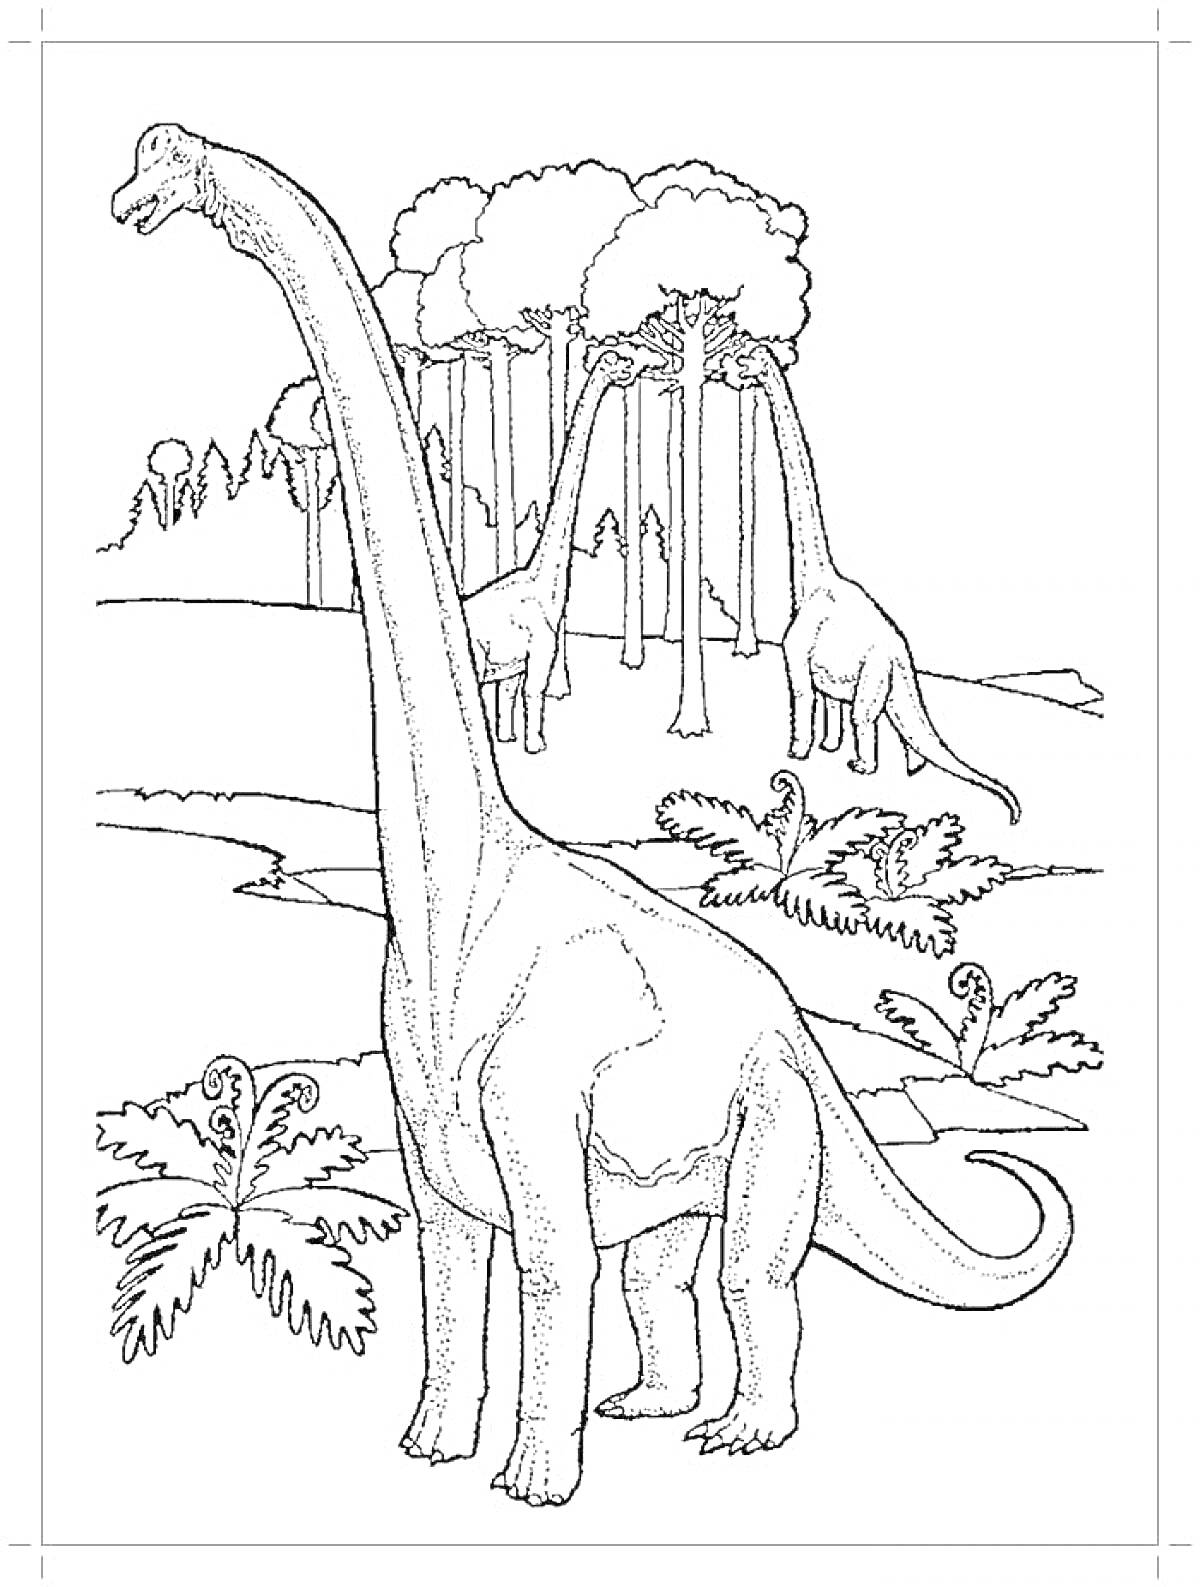 Раскраска Длинношеие динозавры на фоне леса с папоротниками